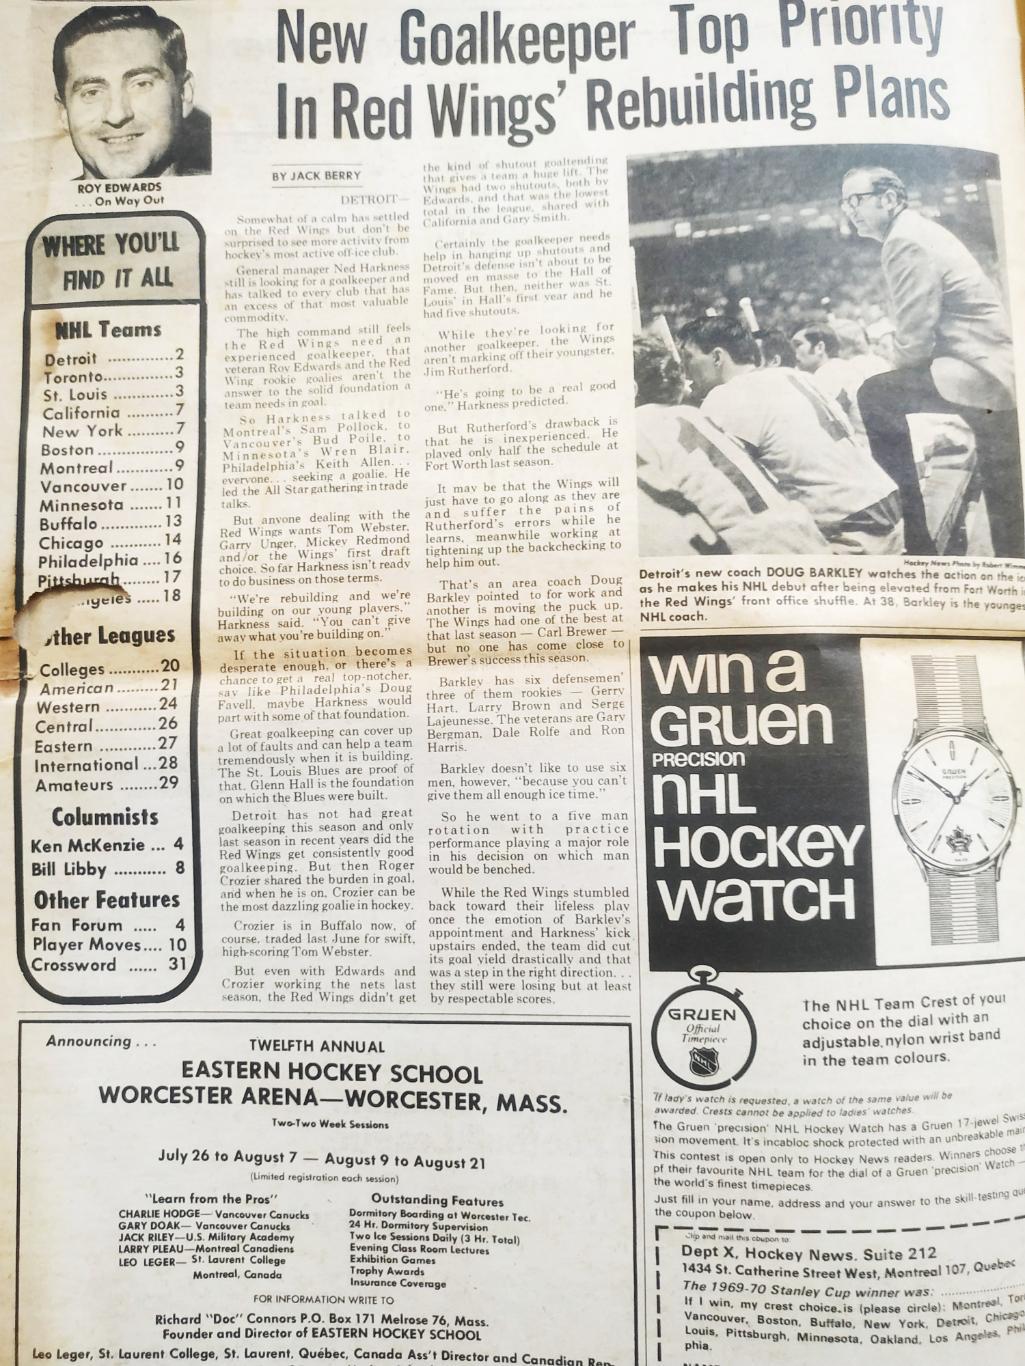 ХОККЕЙ ЖУРНАЛ ЕЖЕНЕДЕЛЬНИК НХЛ НОВОСТИ ХОККЕЯ FEB.5 1971 NHL THE HOCKEY NEWS 1